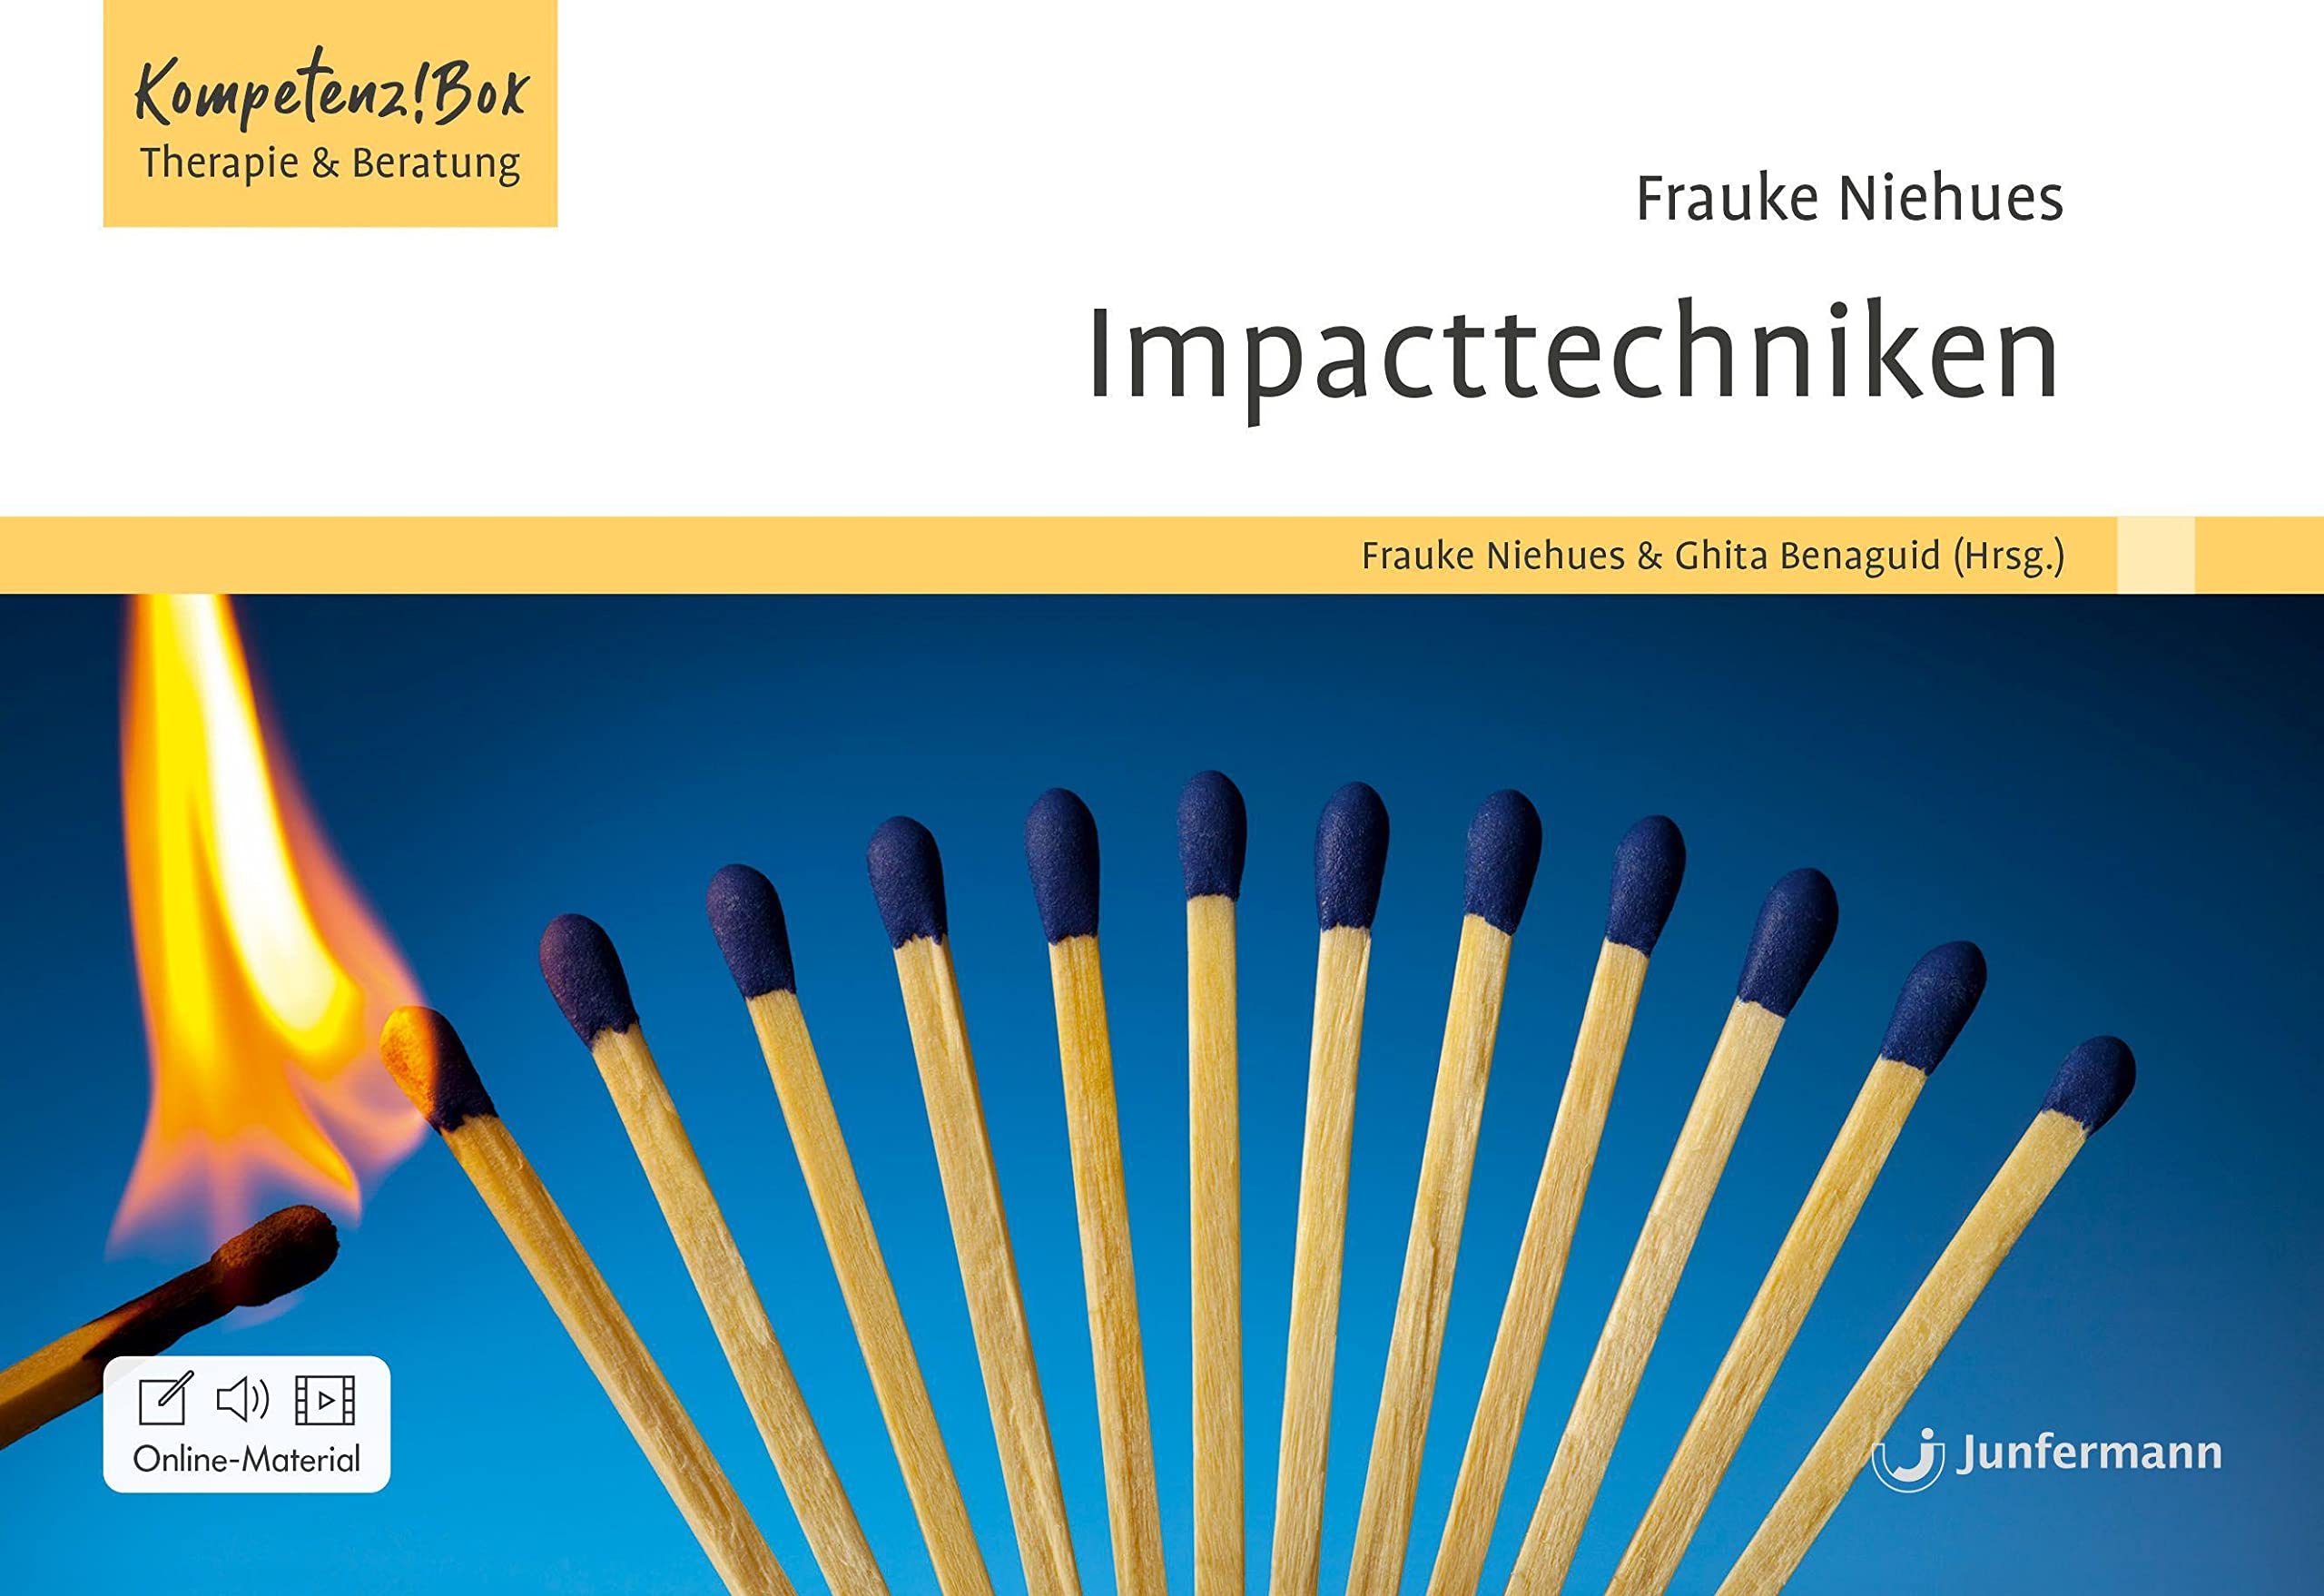 Titelbild Impacttechniken: Kompetenz!Box Therapie und Beratung von Frauke Niehues und Ghita Benaguid